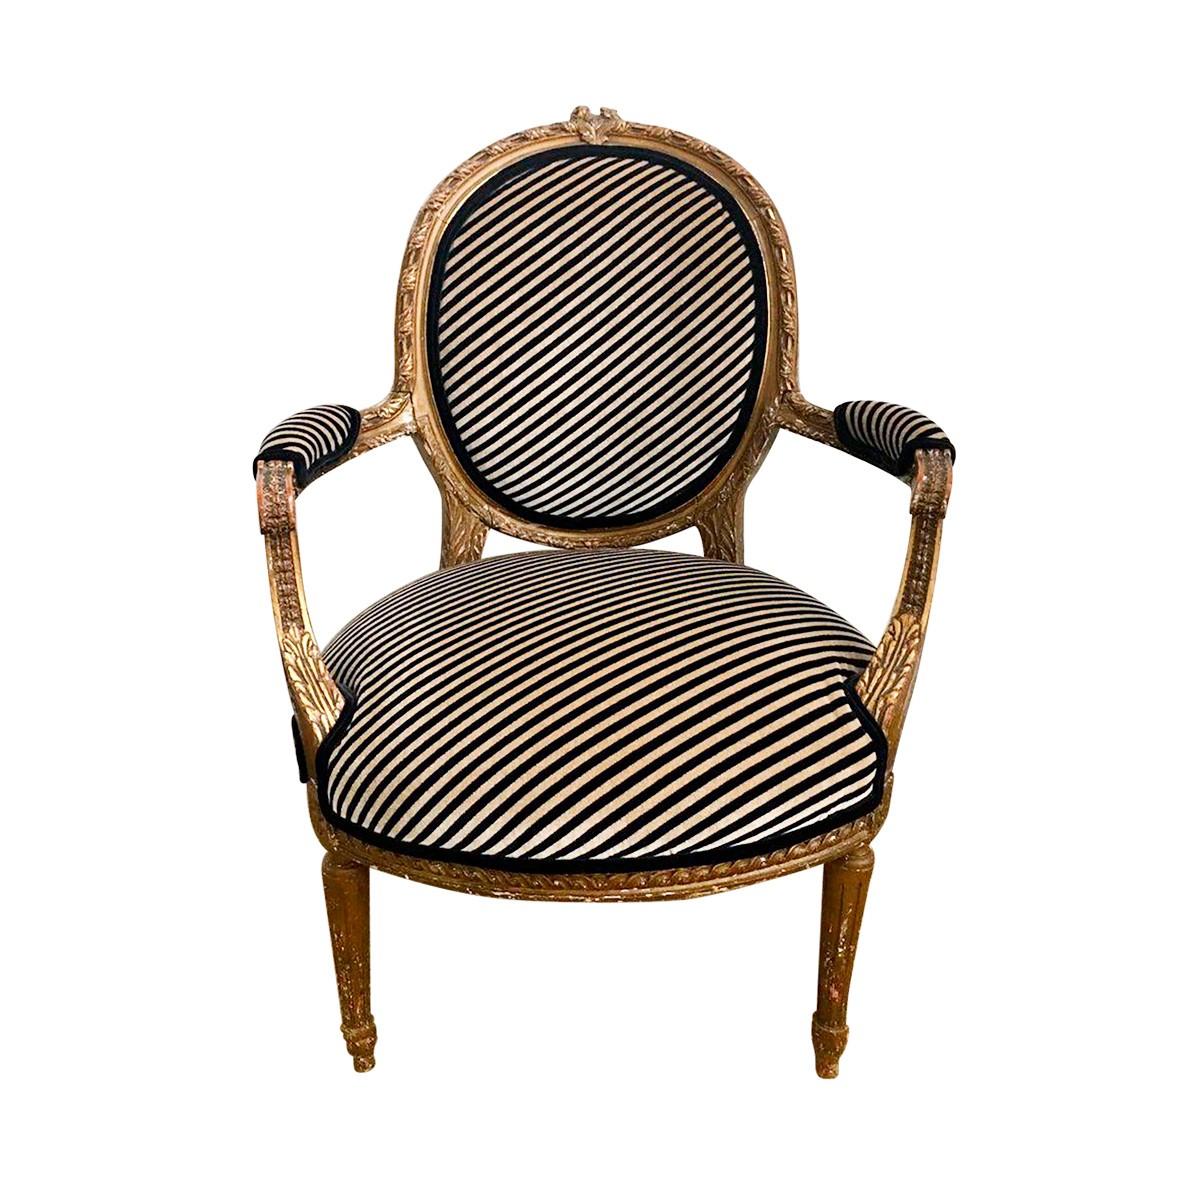 Anfang des 20. Jahrhunderts geschnitzter Sessel aus vergoldetem Holz im Louis-XVI-Stil mit runden, konischen Beinen. Dieser Fauteuil mit ovaler Rückenlehne ist mit wunderschön geschnitzten Akanthusblättern ausgestattet und mit einem modernen,